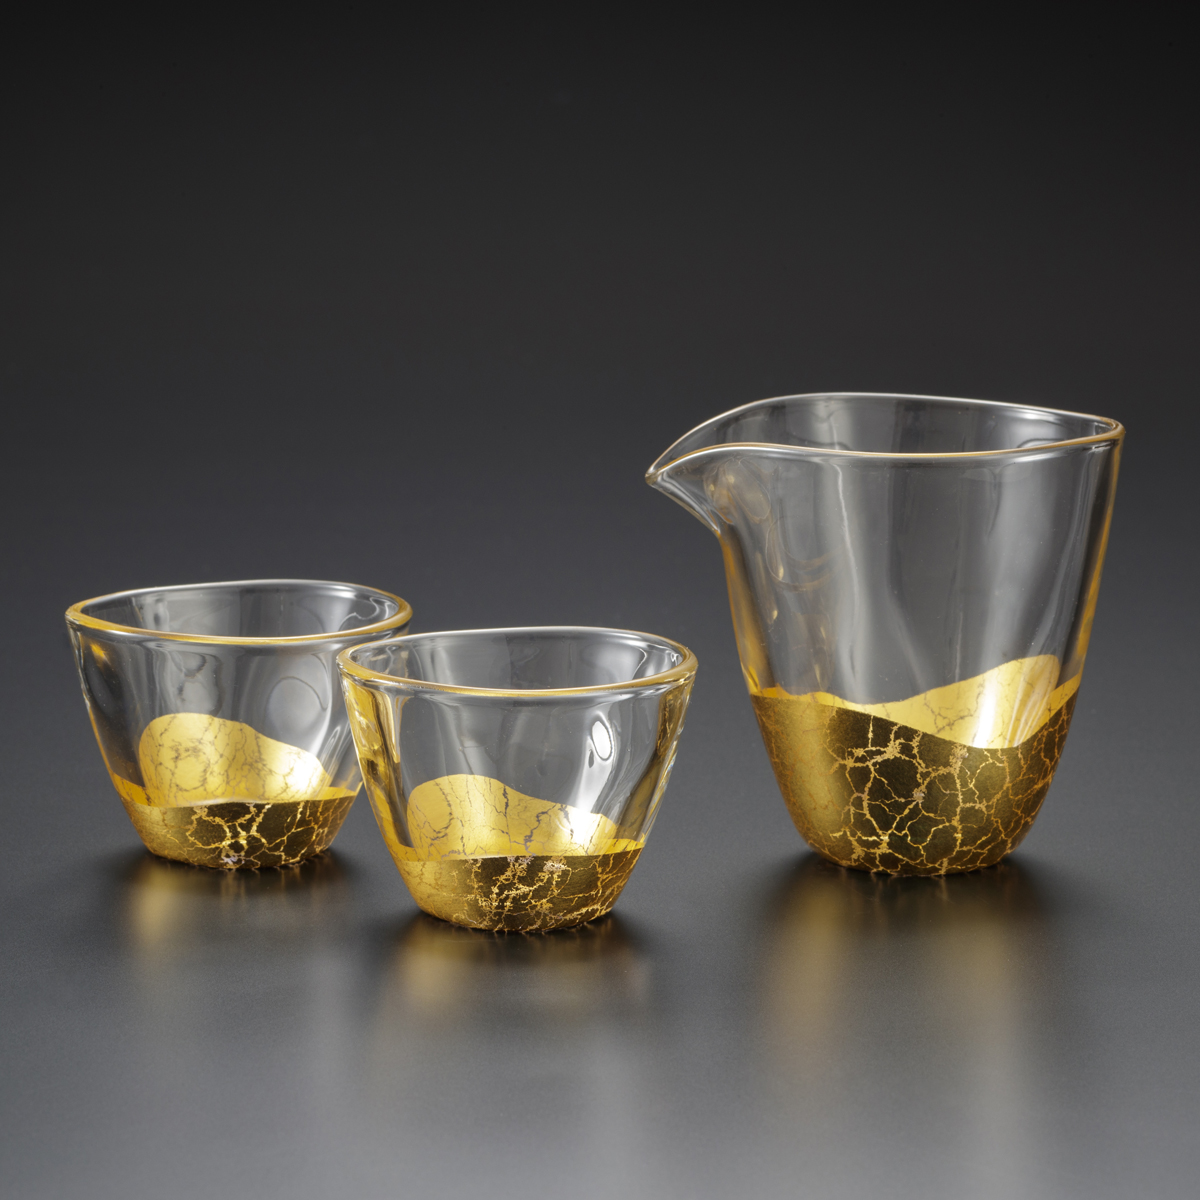 ชุดแก้วสาเก Kannyuu ตกแต่งลวดลายจากทองคำ Kanazawa